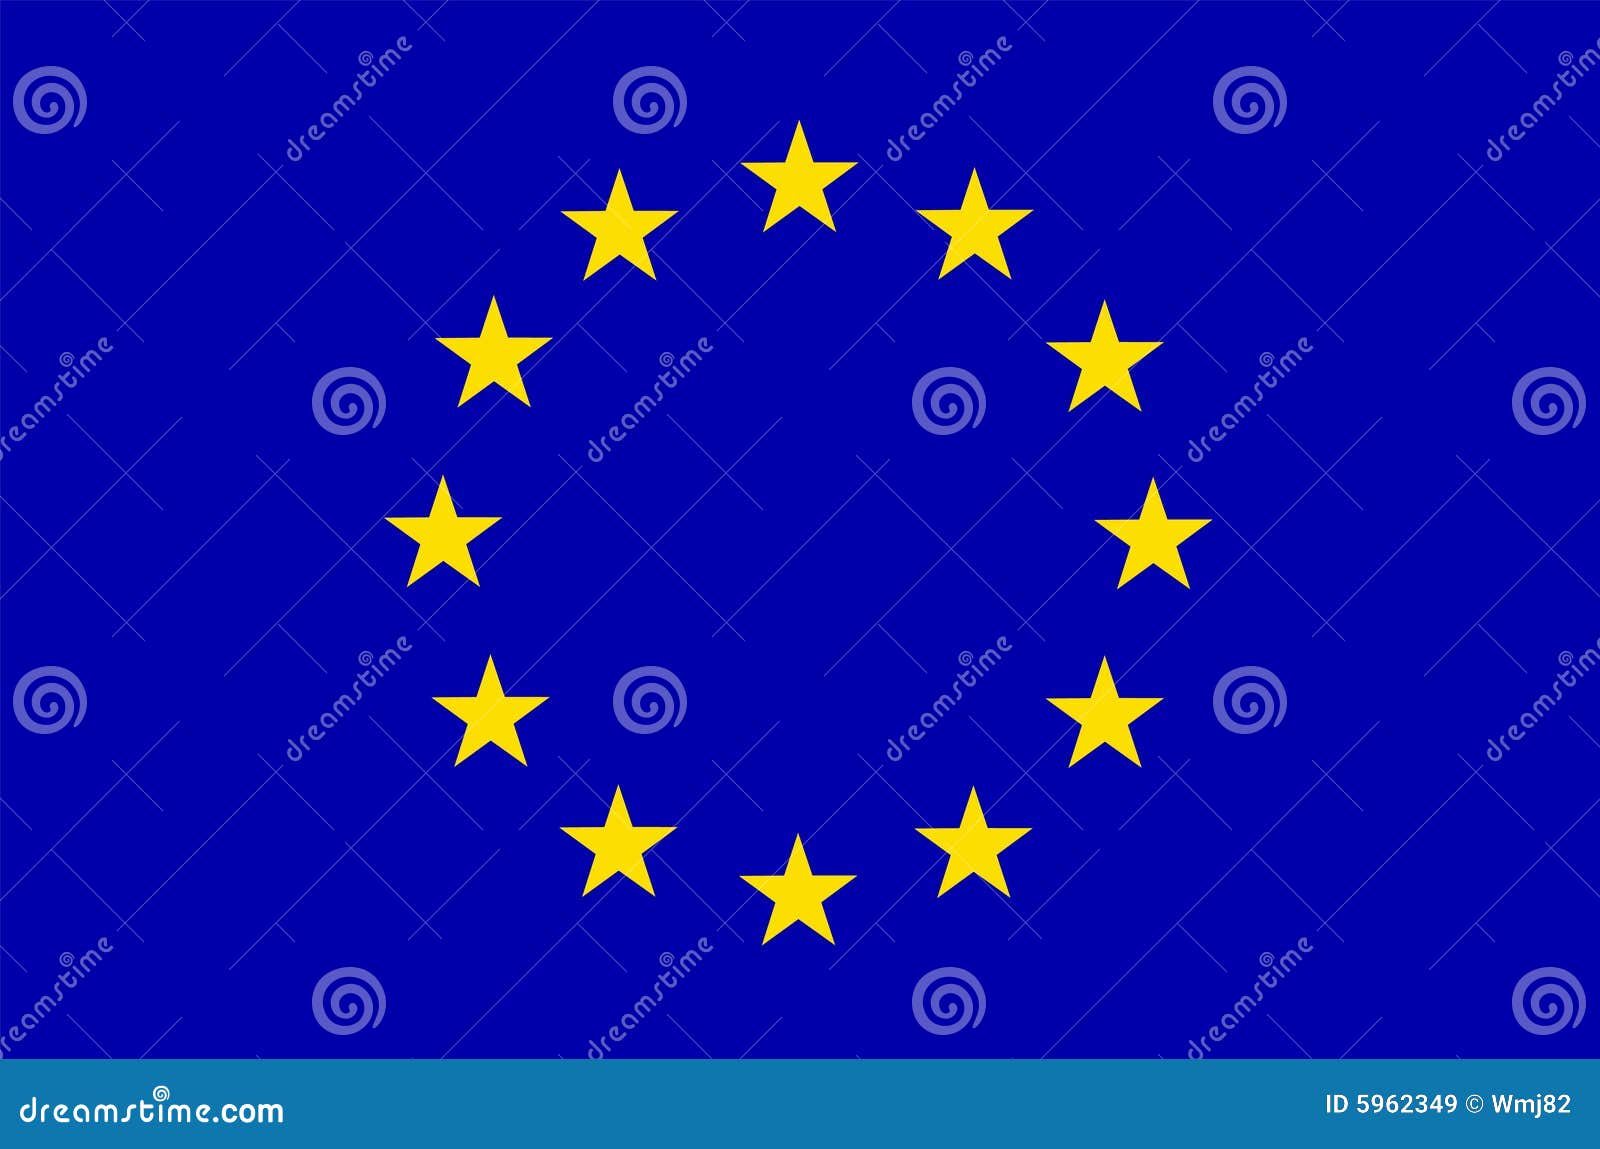 eu europe flag